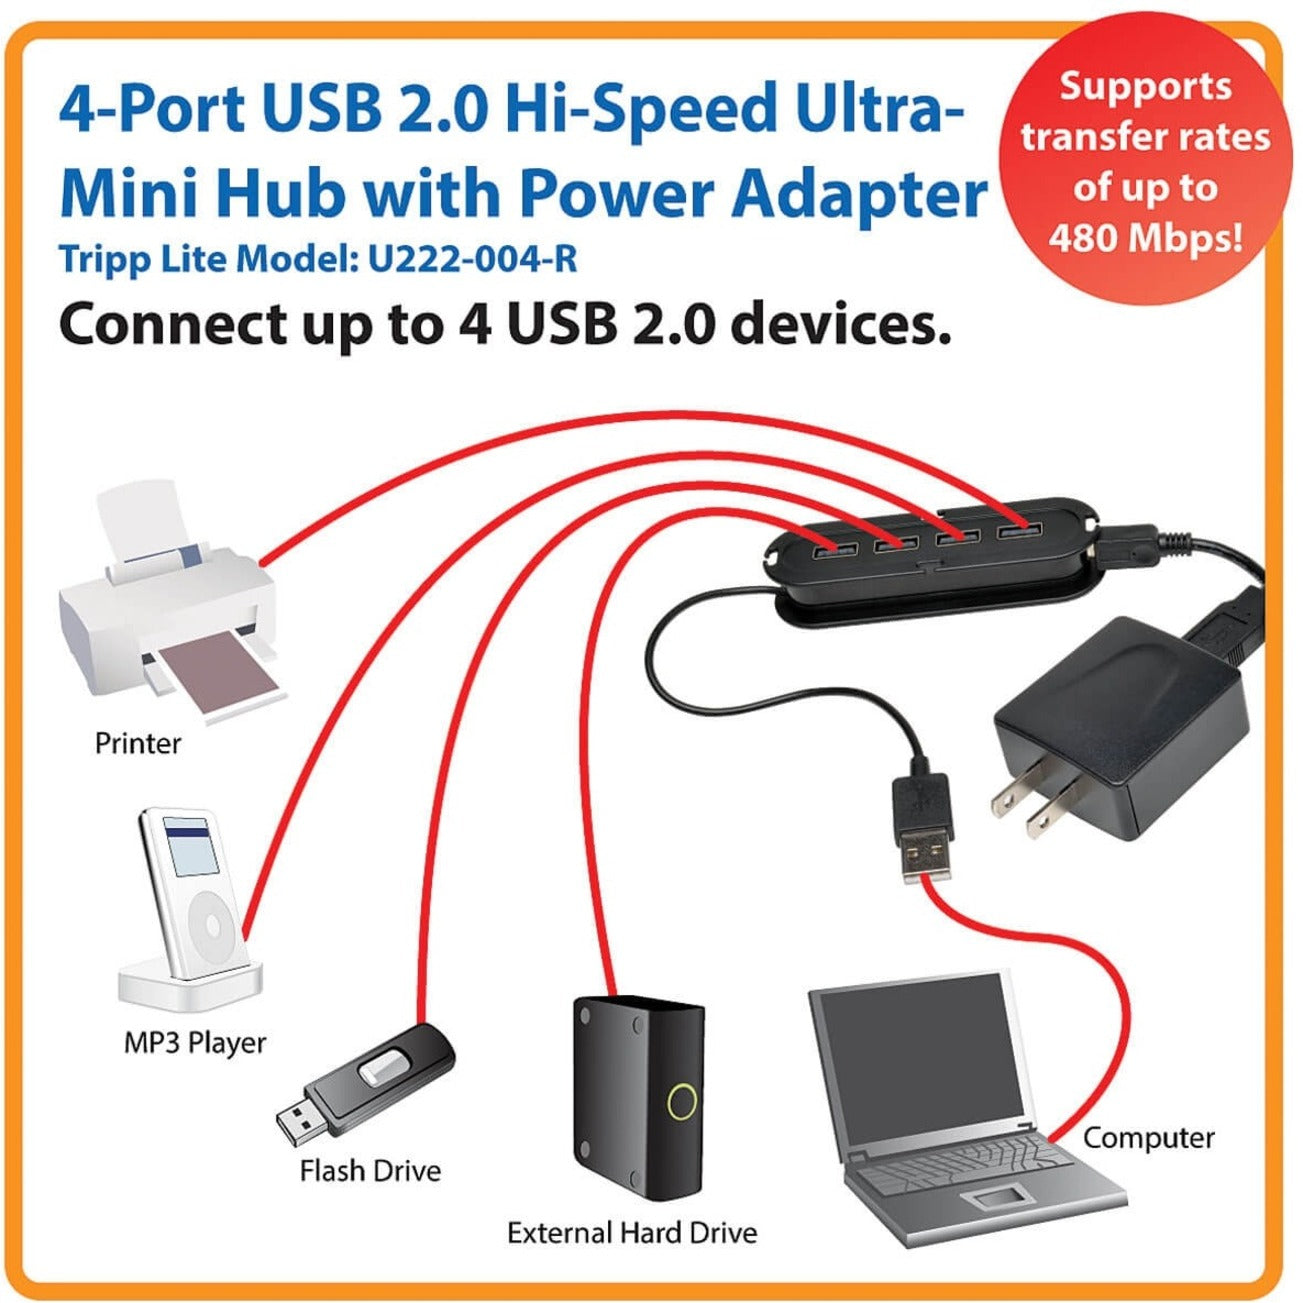 Tripp Lite U222-004-R 4-Port USB 2.0 Hi-Speed Ultra-Mini Hub Compact Design Black Tripp Lite => Tripp Lite 4-Port => 4-Port USB 2.0 => USB 2.0 Hi-Speed => Haut débit Ultra-Mini => Ultra-Mini Hub => Hub Compact Design => Design Compact Black => Noir